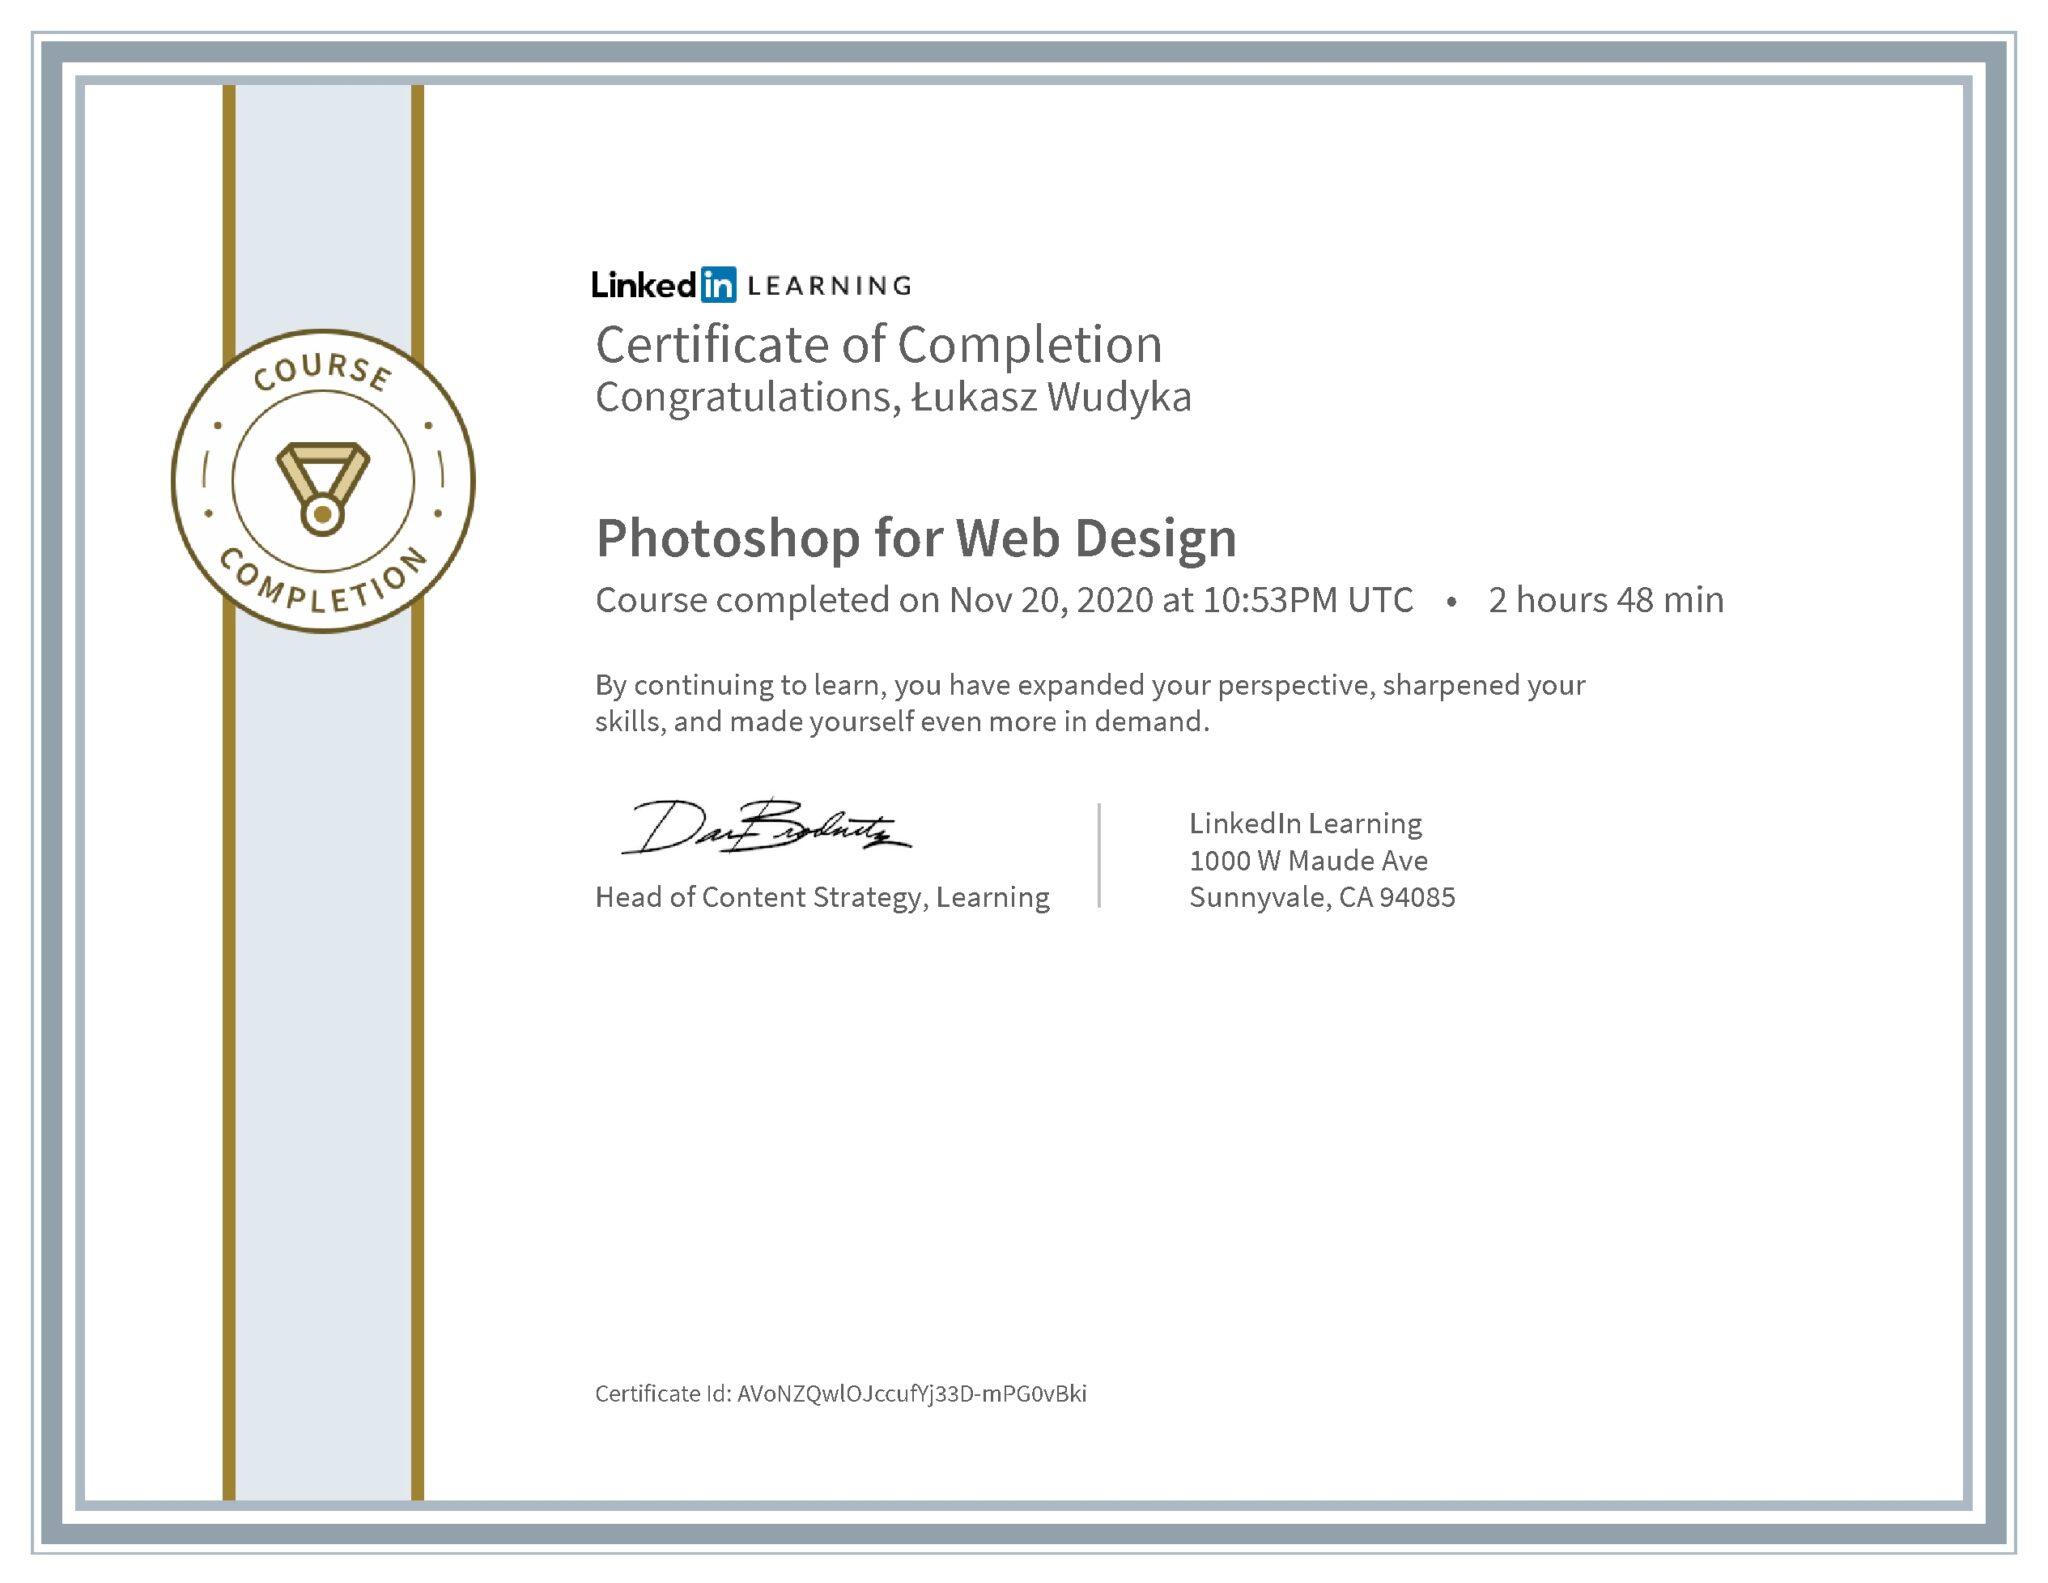 Łukasz Wudyka certyfikat LinkedIn Photoshop for Web Design